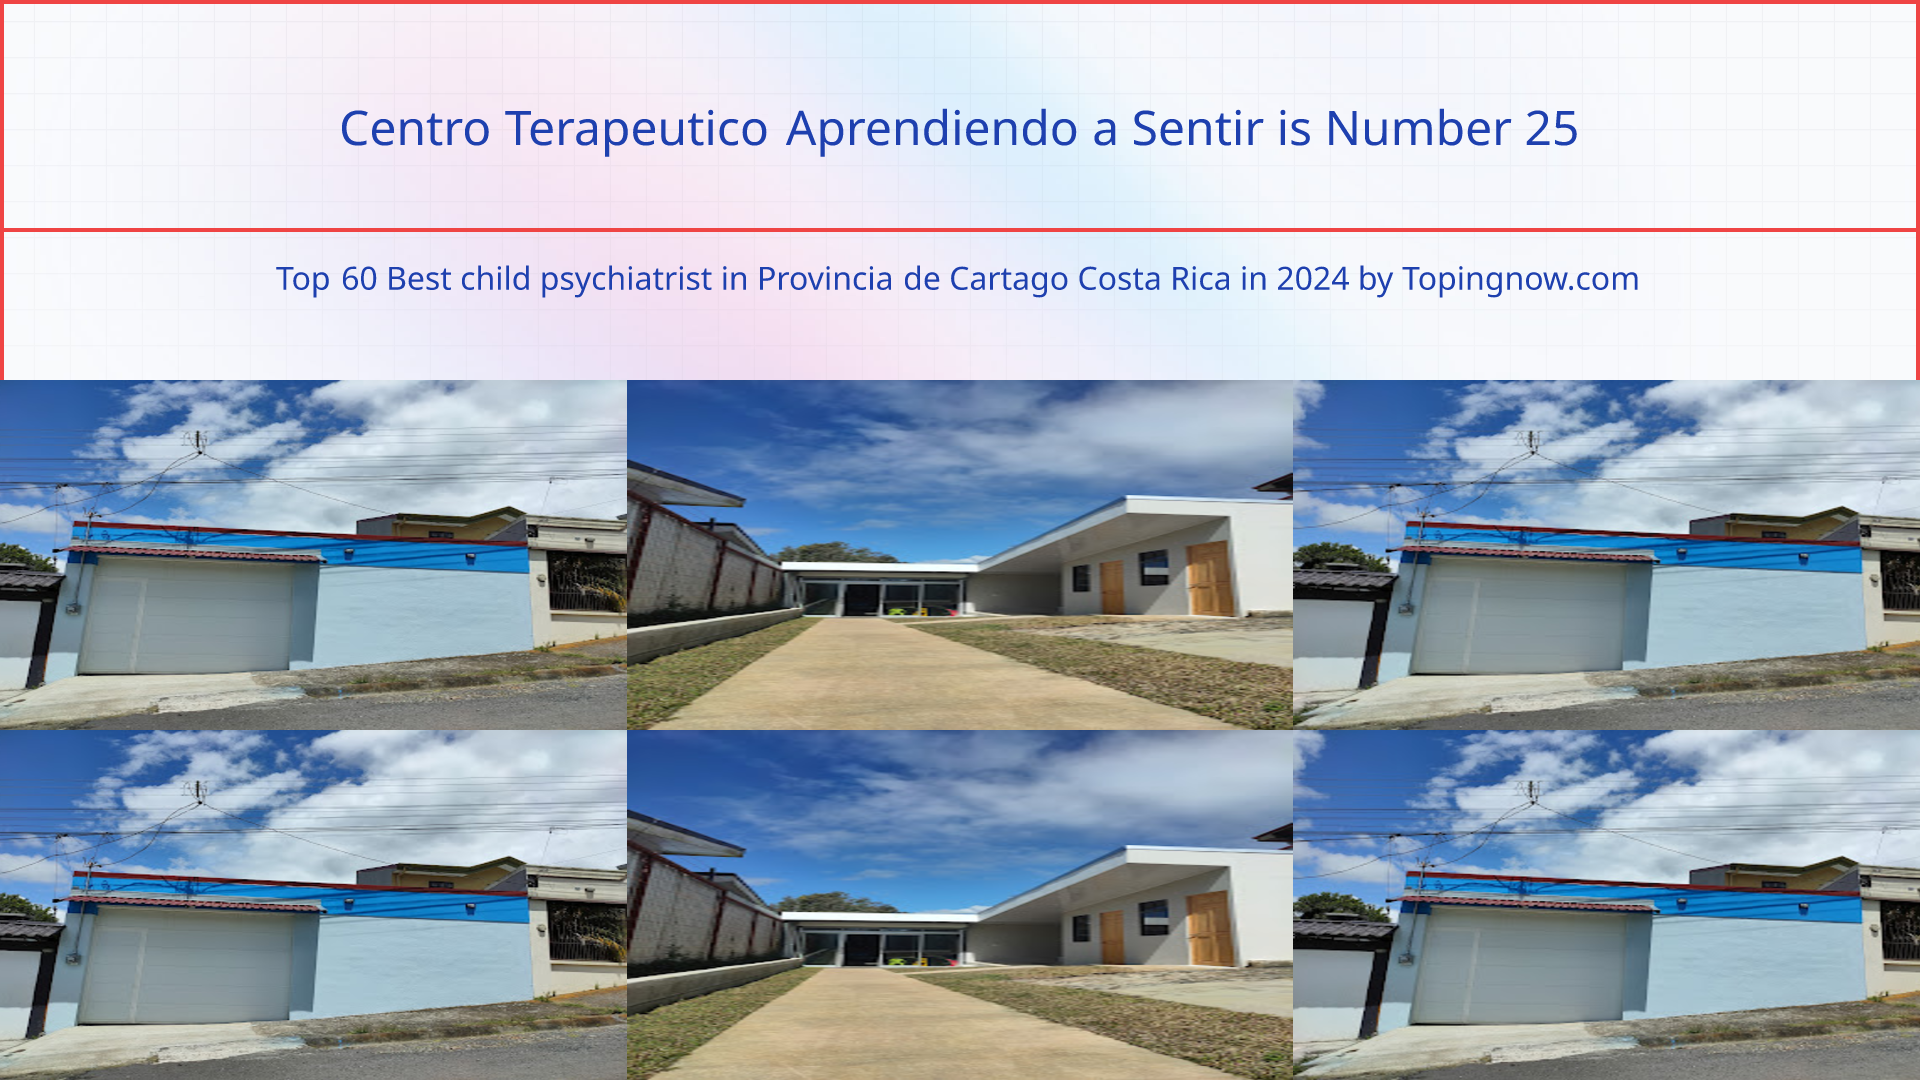 Centro Terapeutico Aprendiendo a Sentir: Top 60 Best child psychiatrist in Provincia de Cartago Costa Rica in 2024